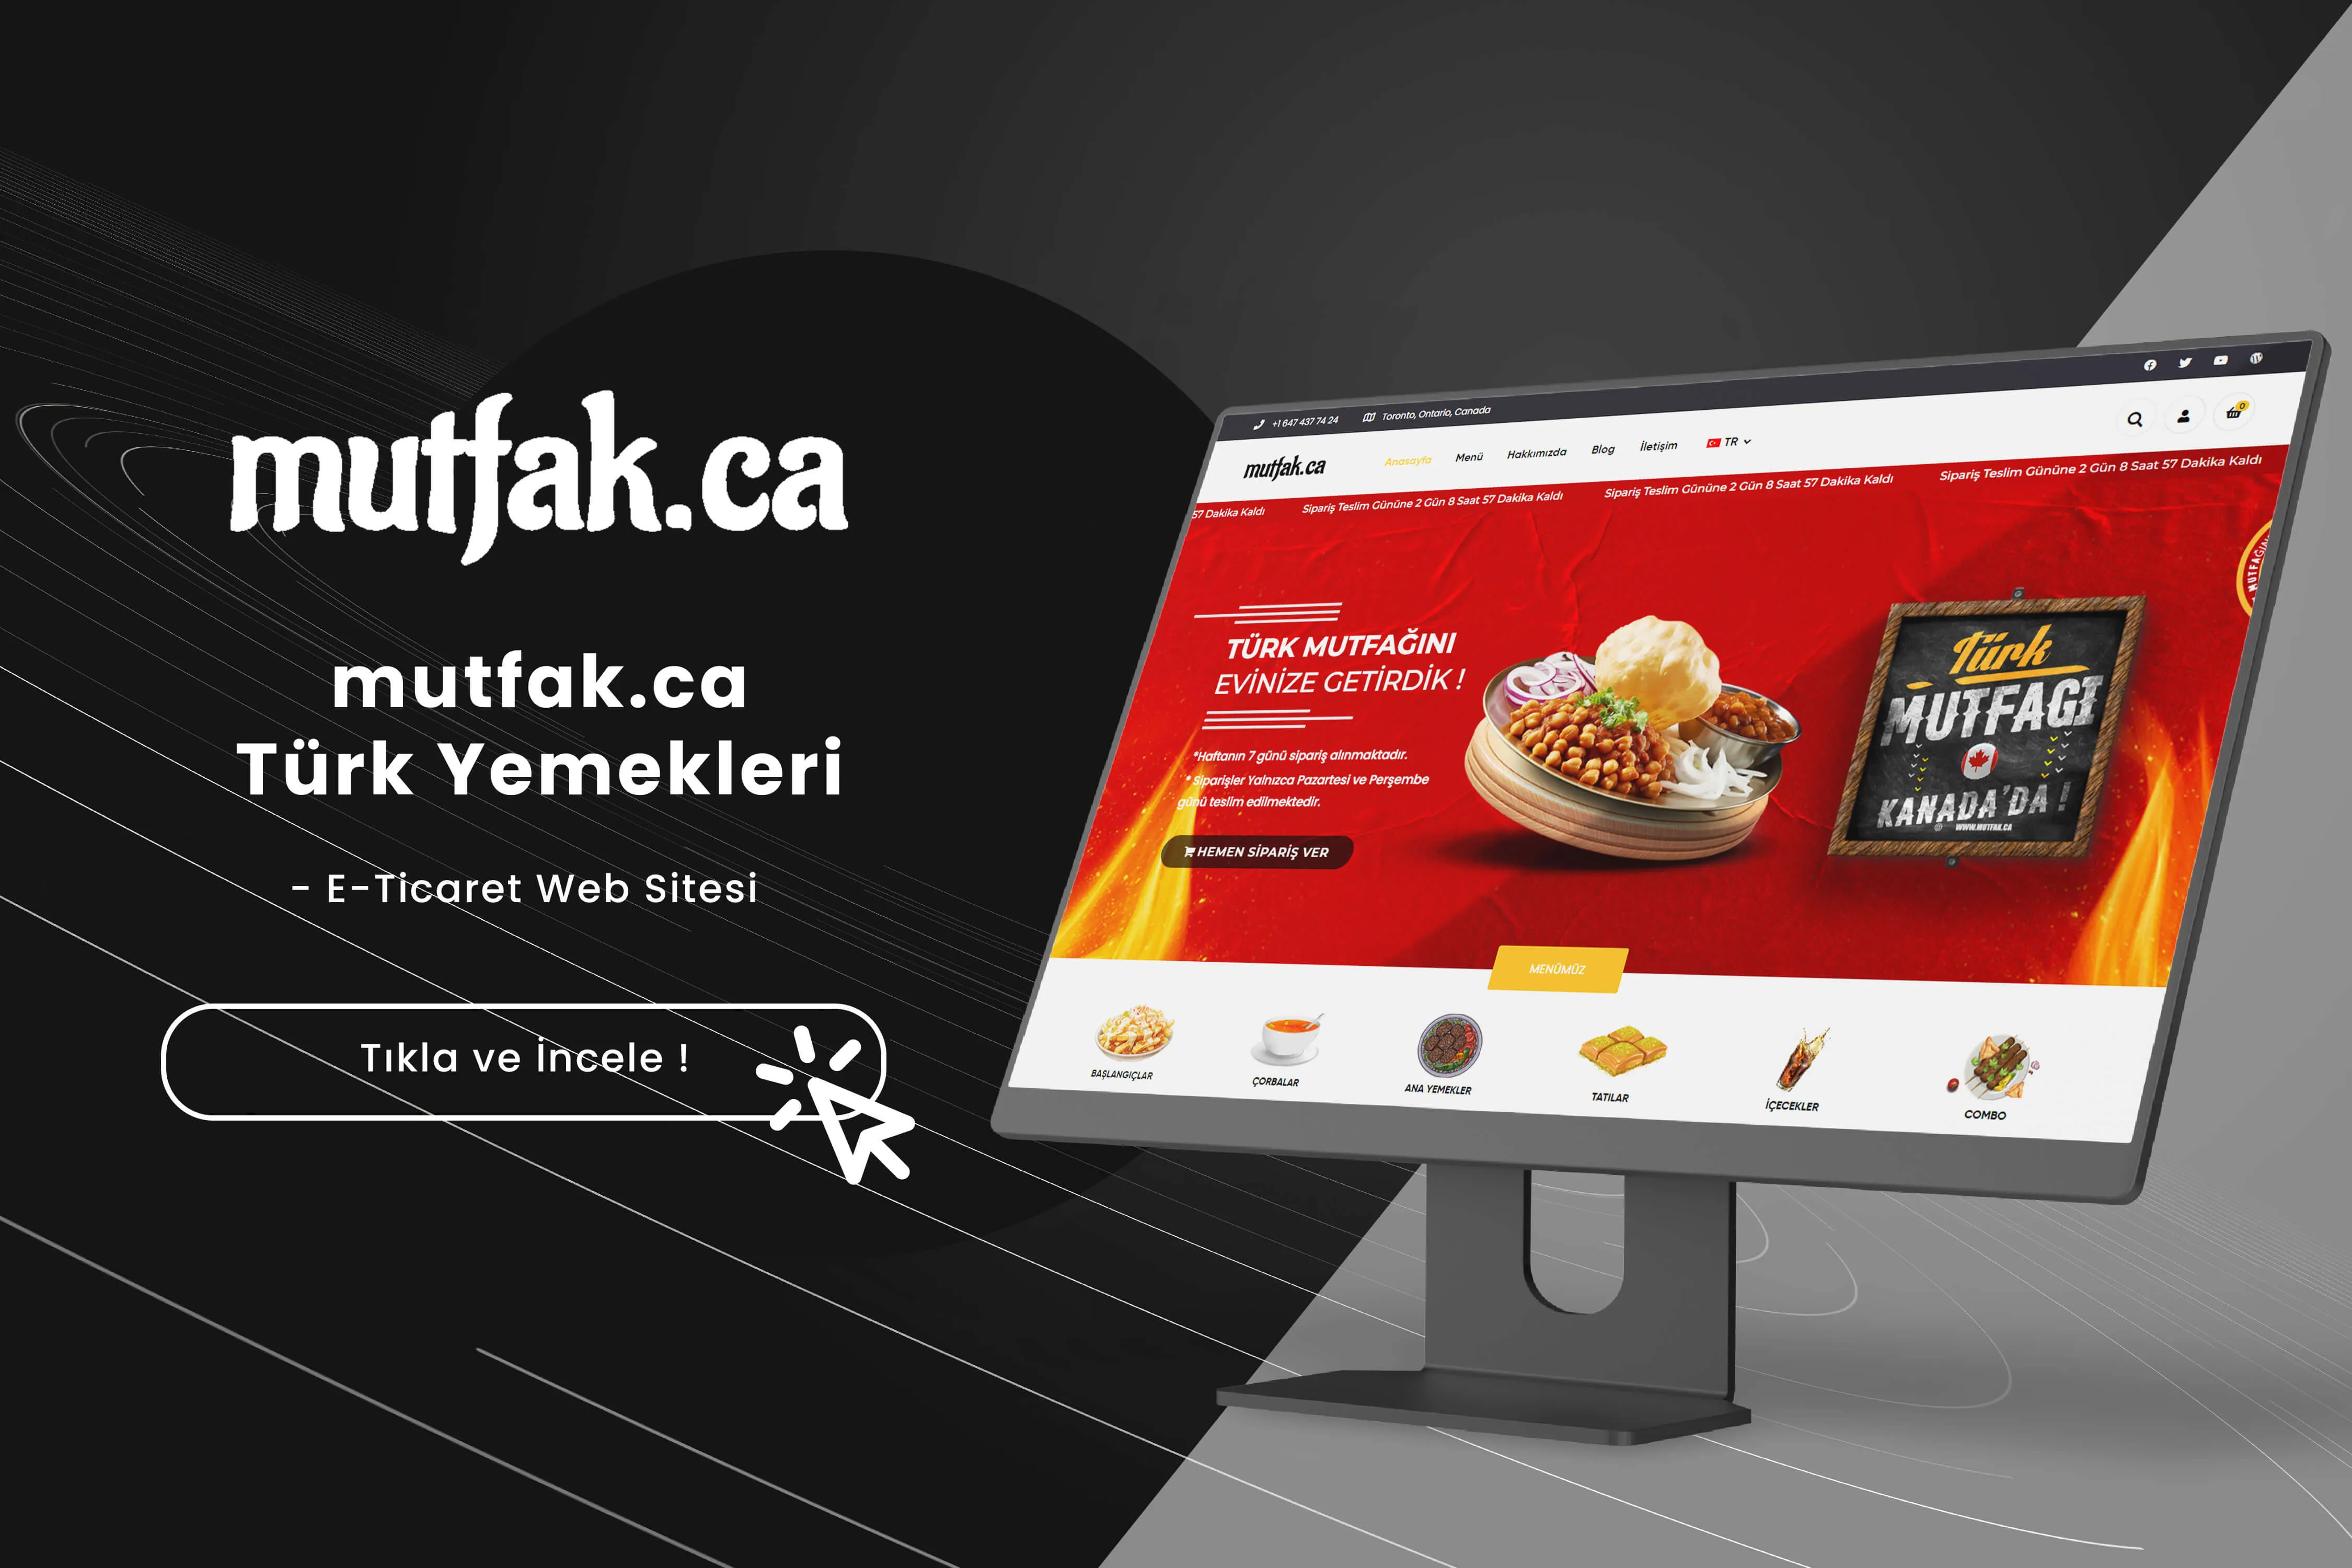 Mutfak.ca - Türk Yemekleri